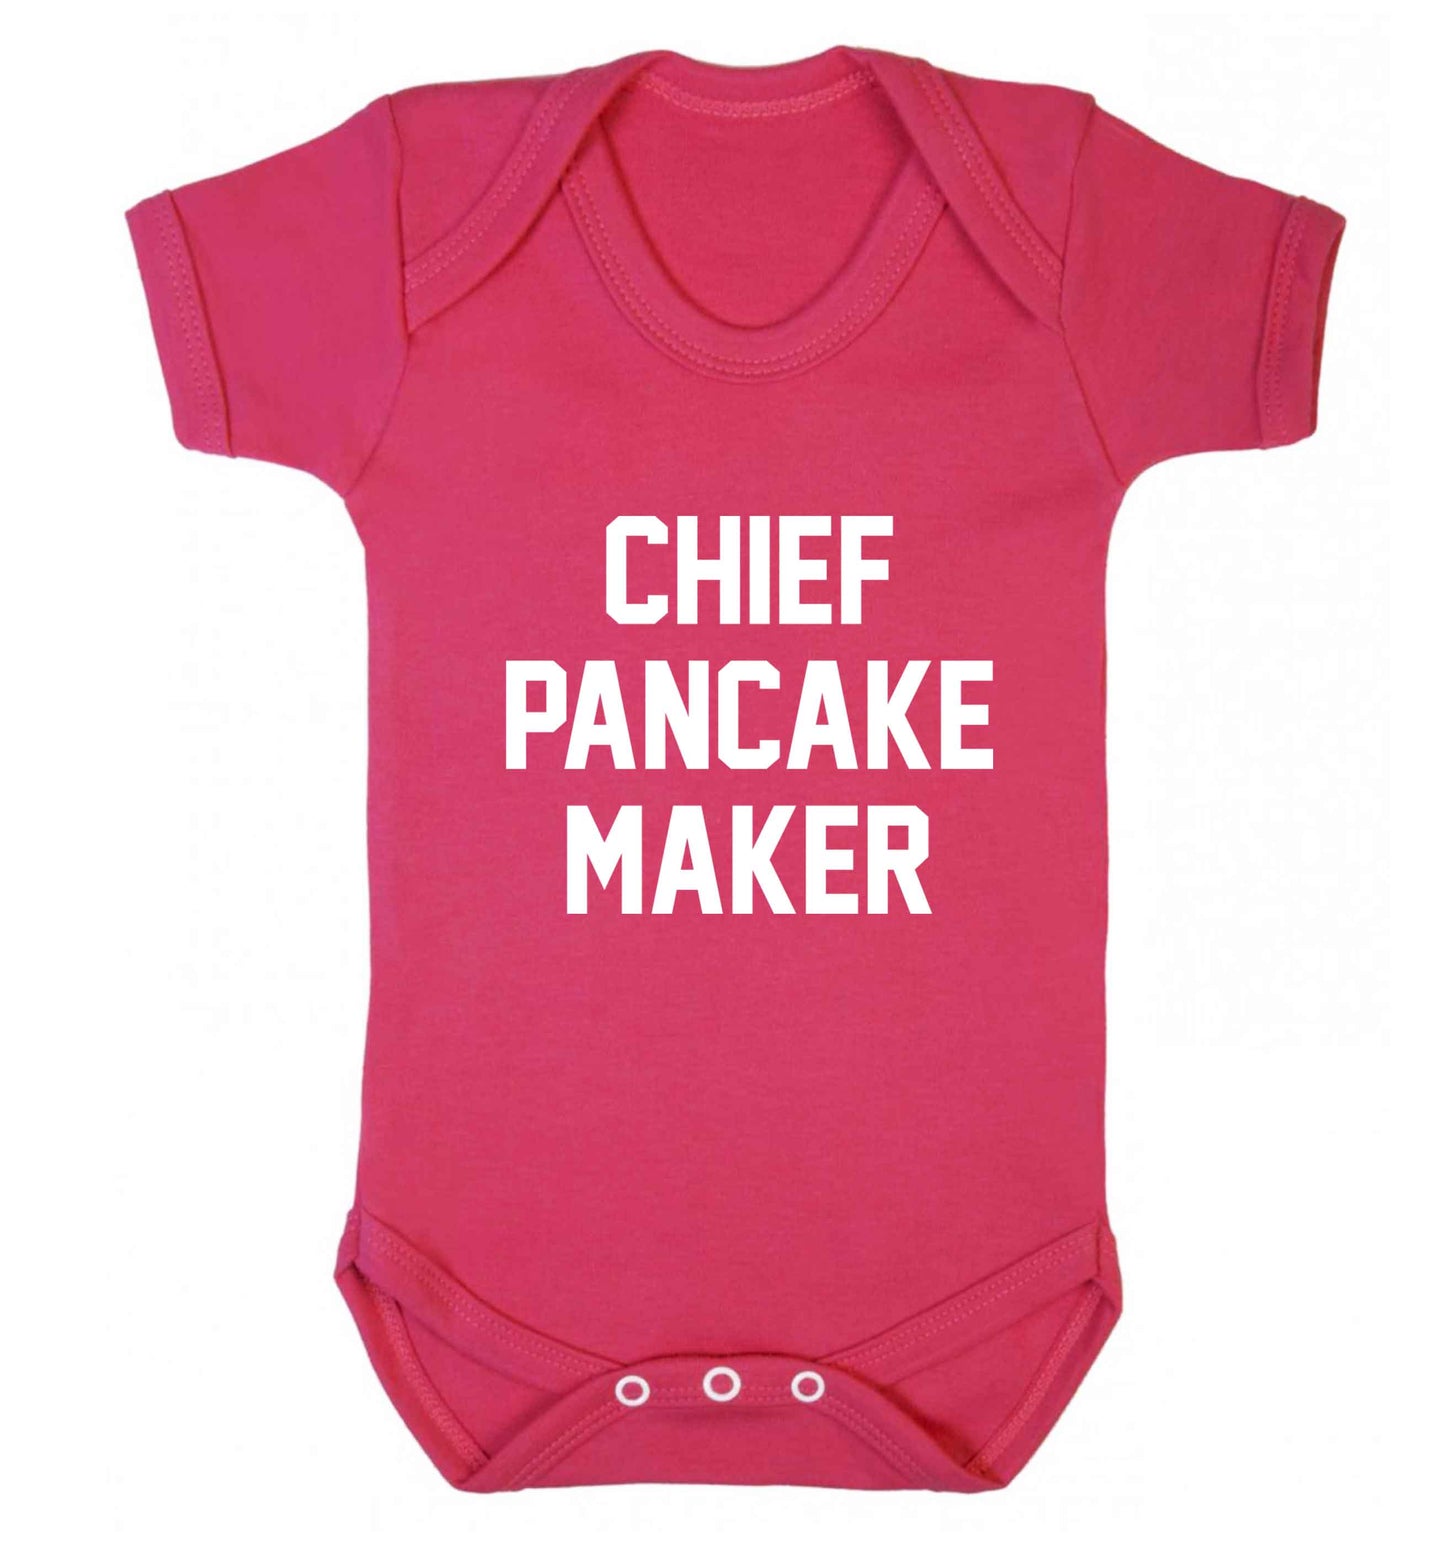 Chief pancake maker baby vest dark pink 18-24 months